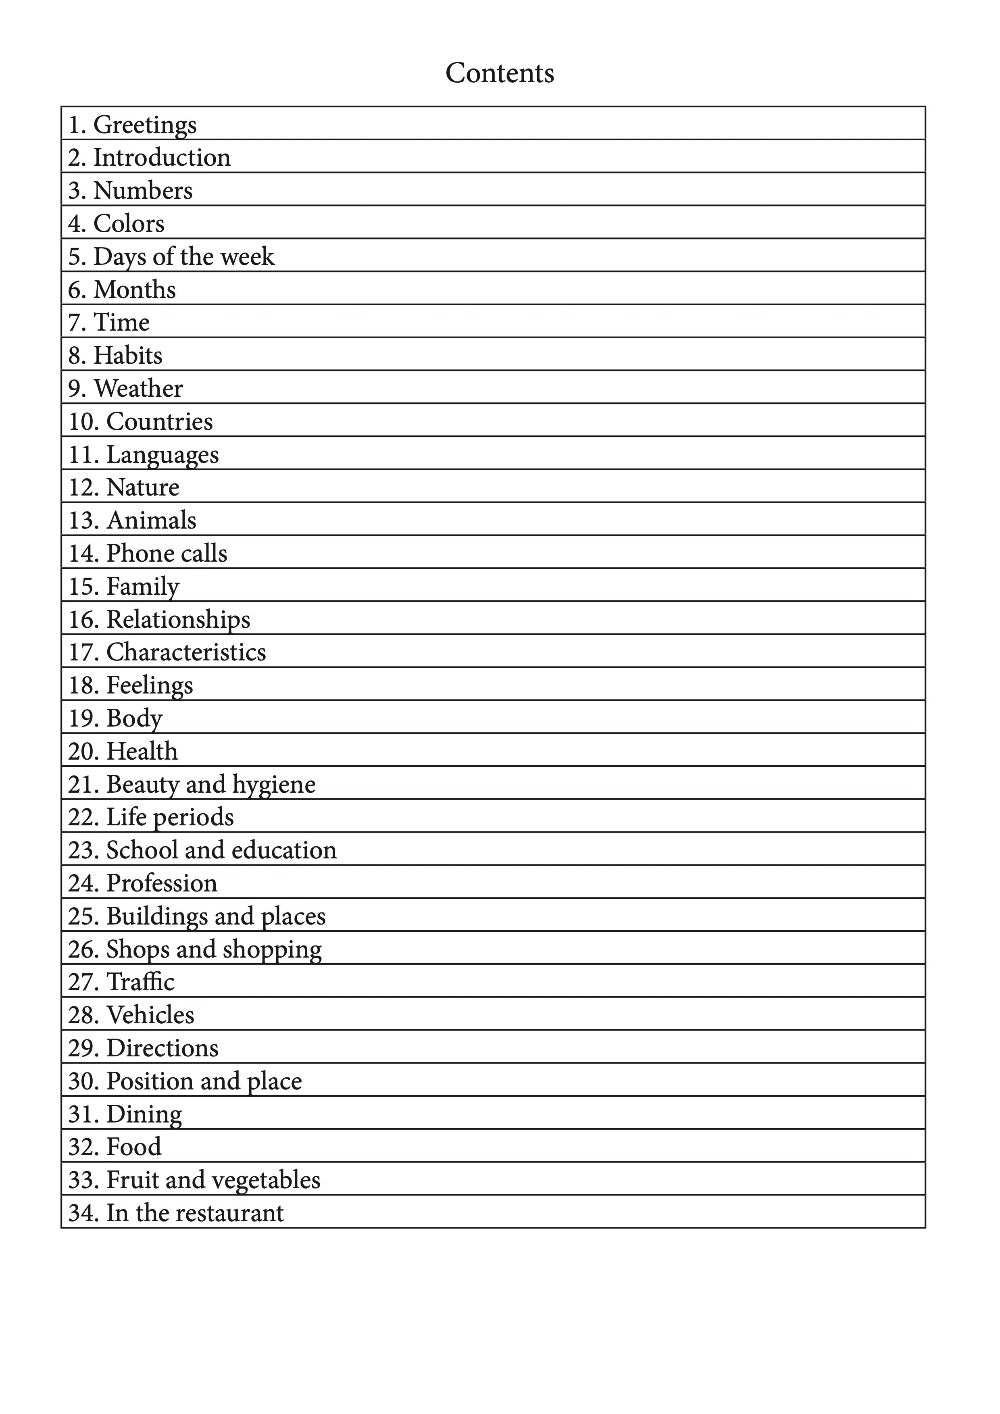 Kadiweu language learning notebook contents page 1